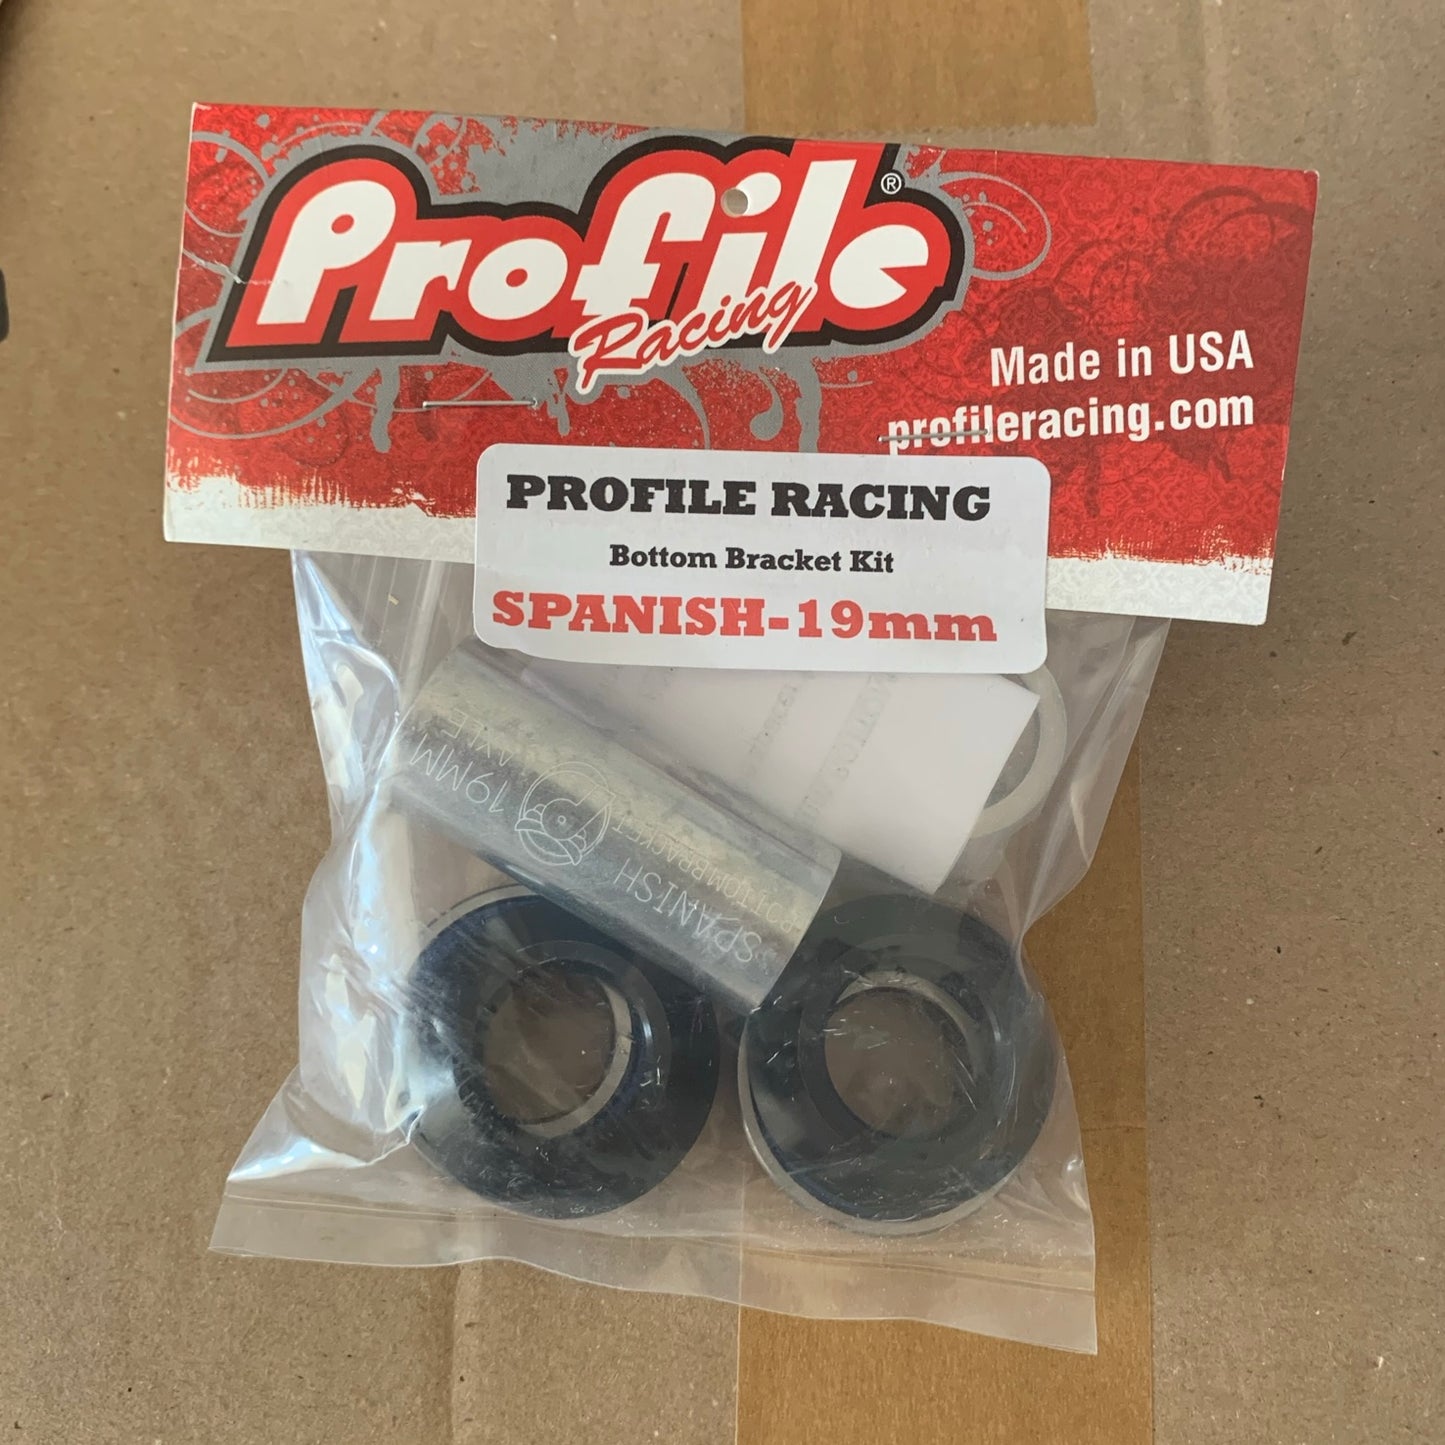 Profile Racing Spanish Innenlager / Bottom Bracket 19mm Black